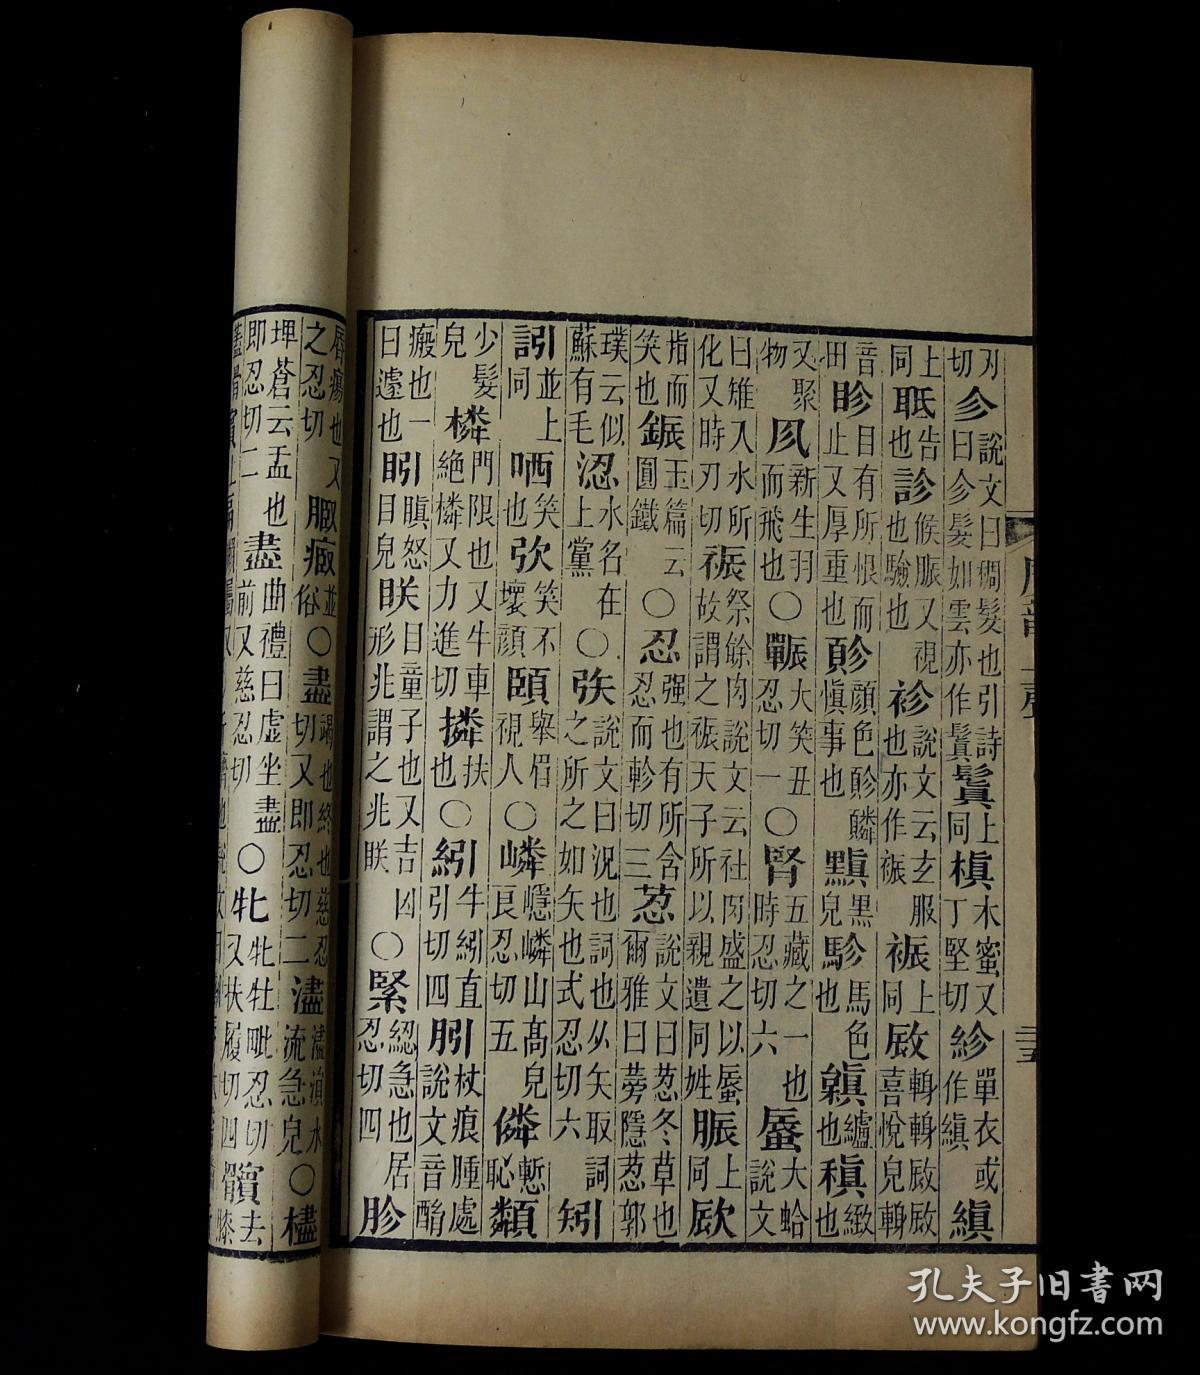 学专著,《广韵》是中国现存的一部重要韵书,是